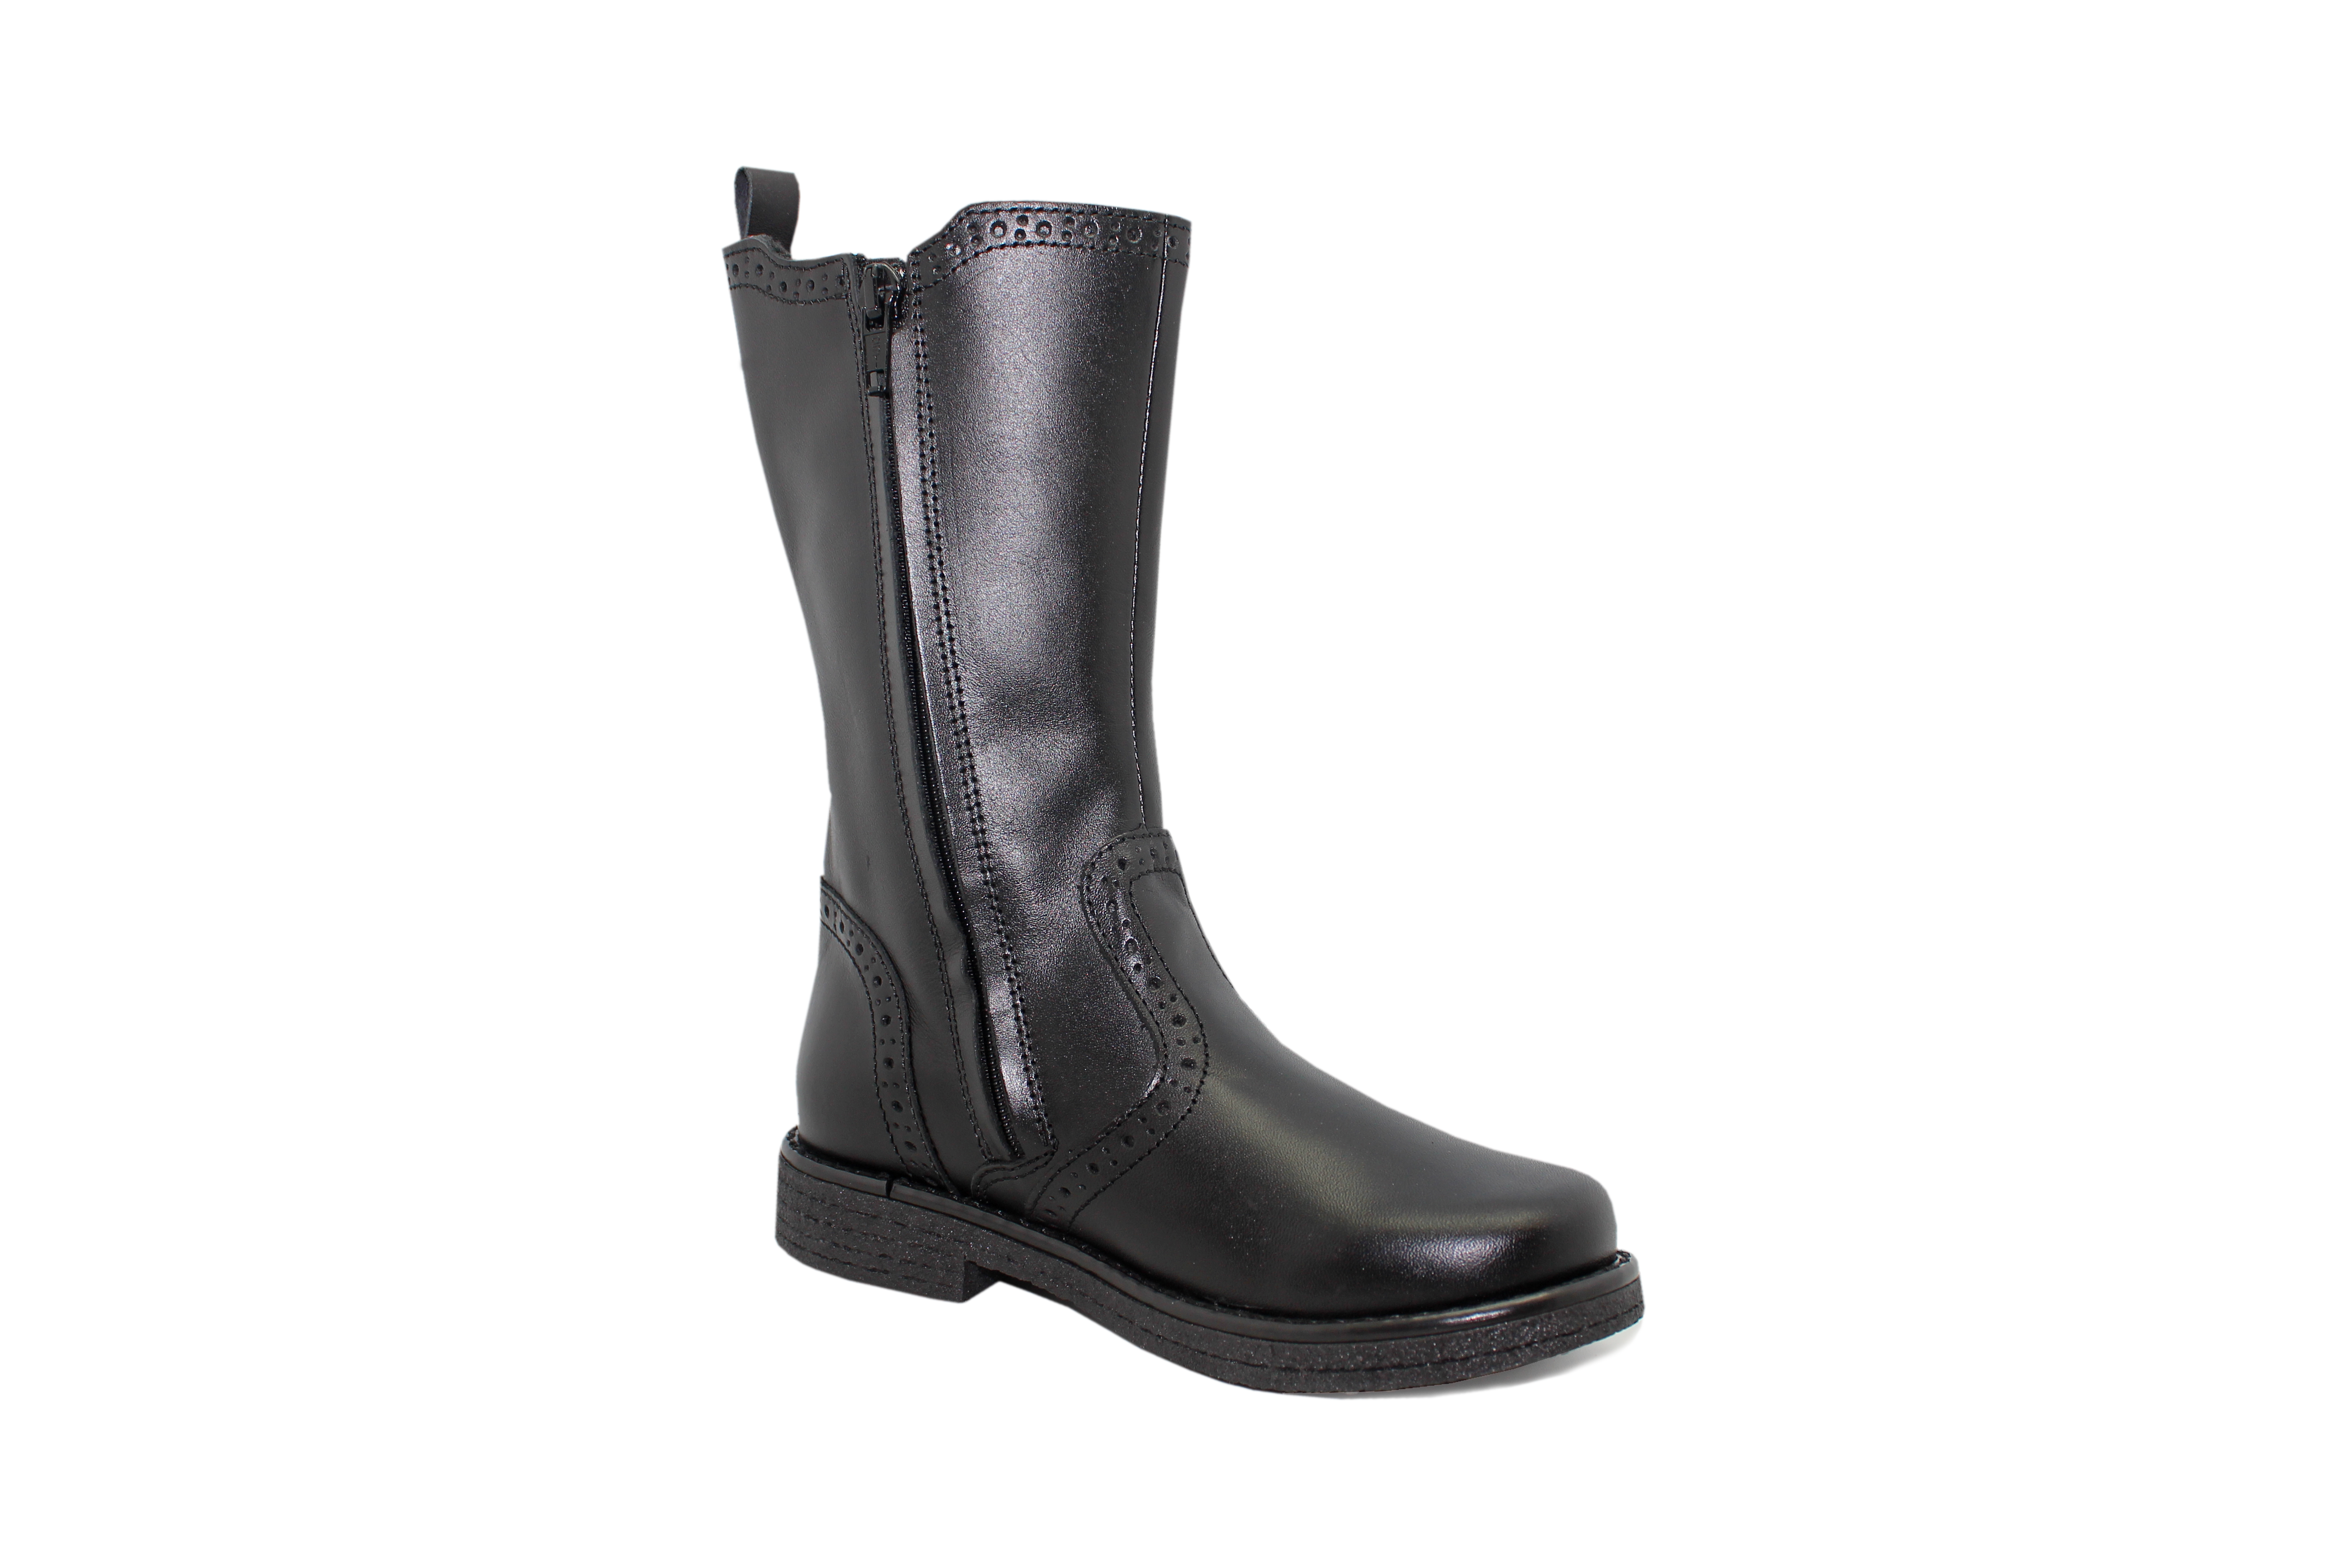 Art. 152 426 01 black boots for girls